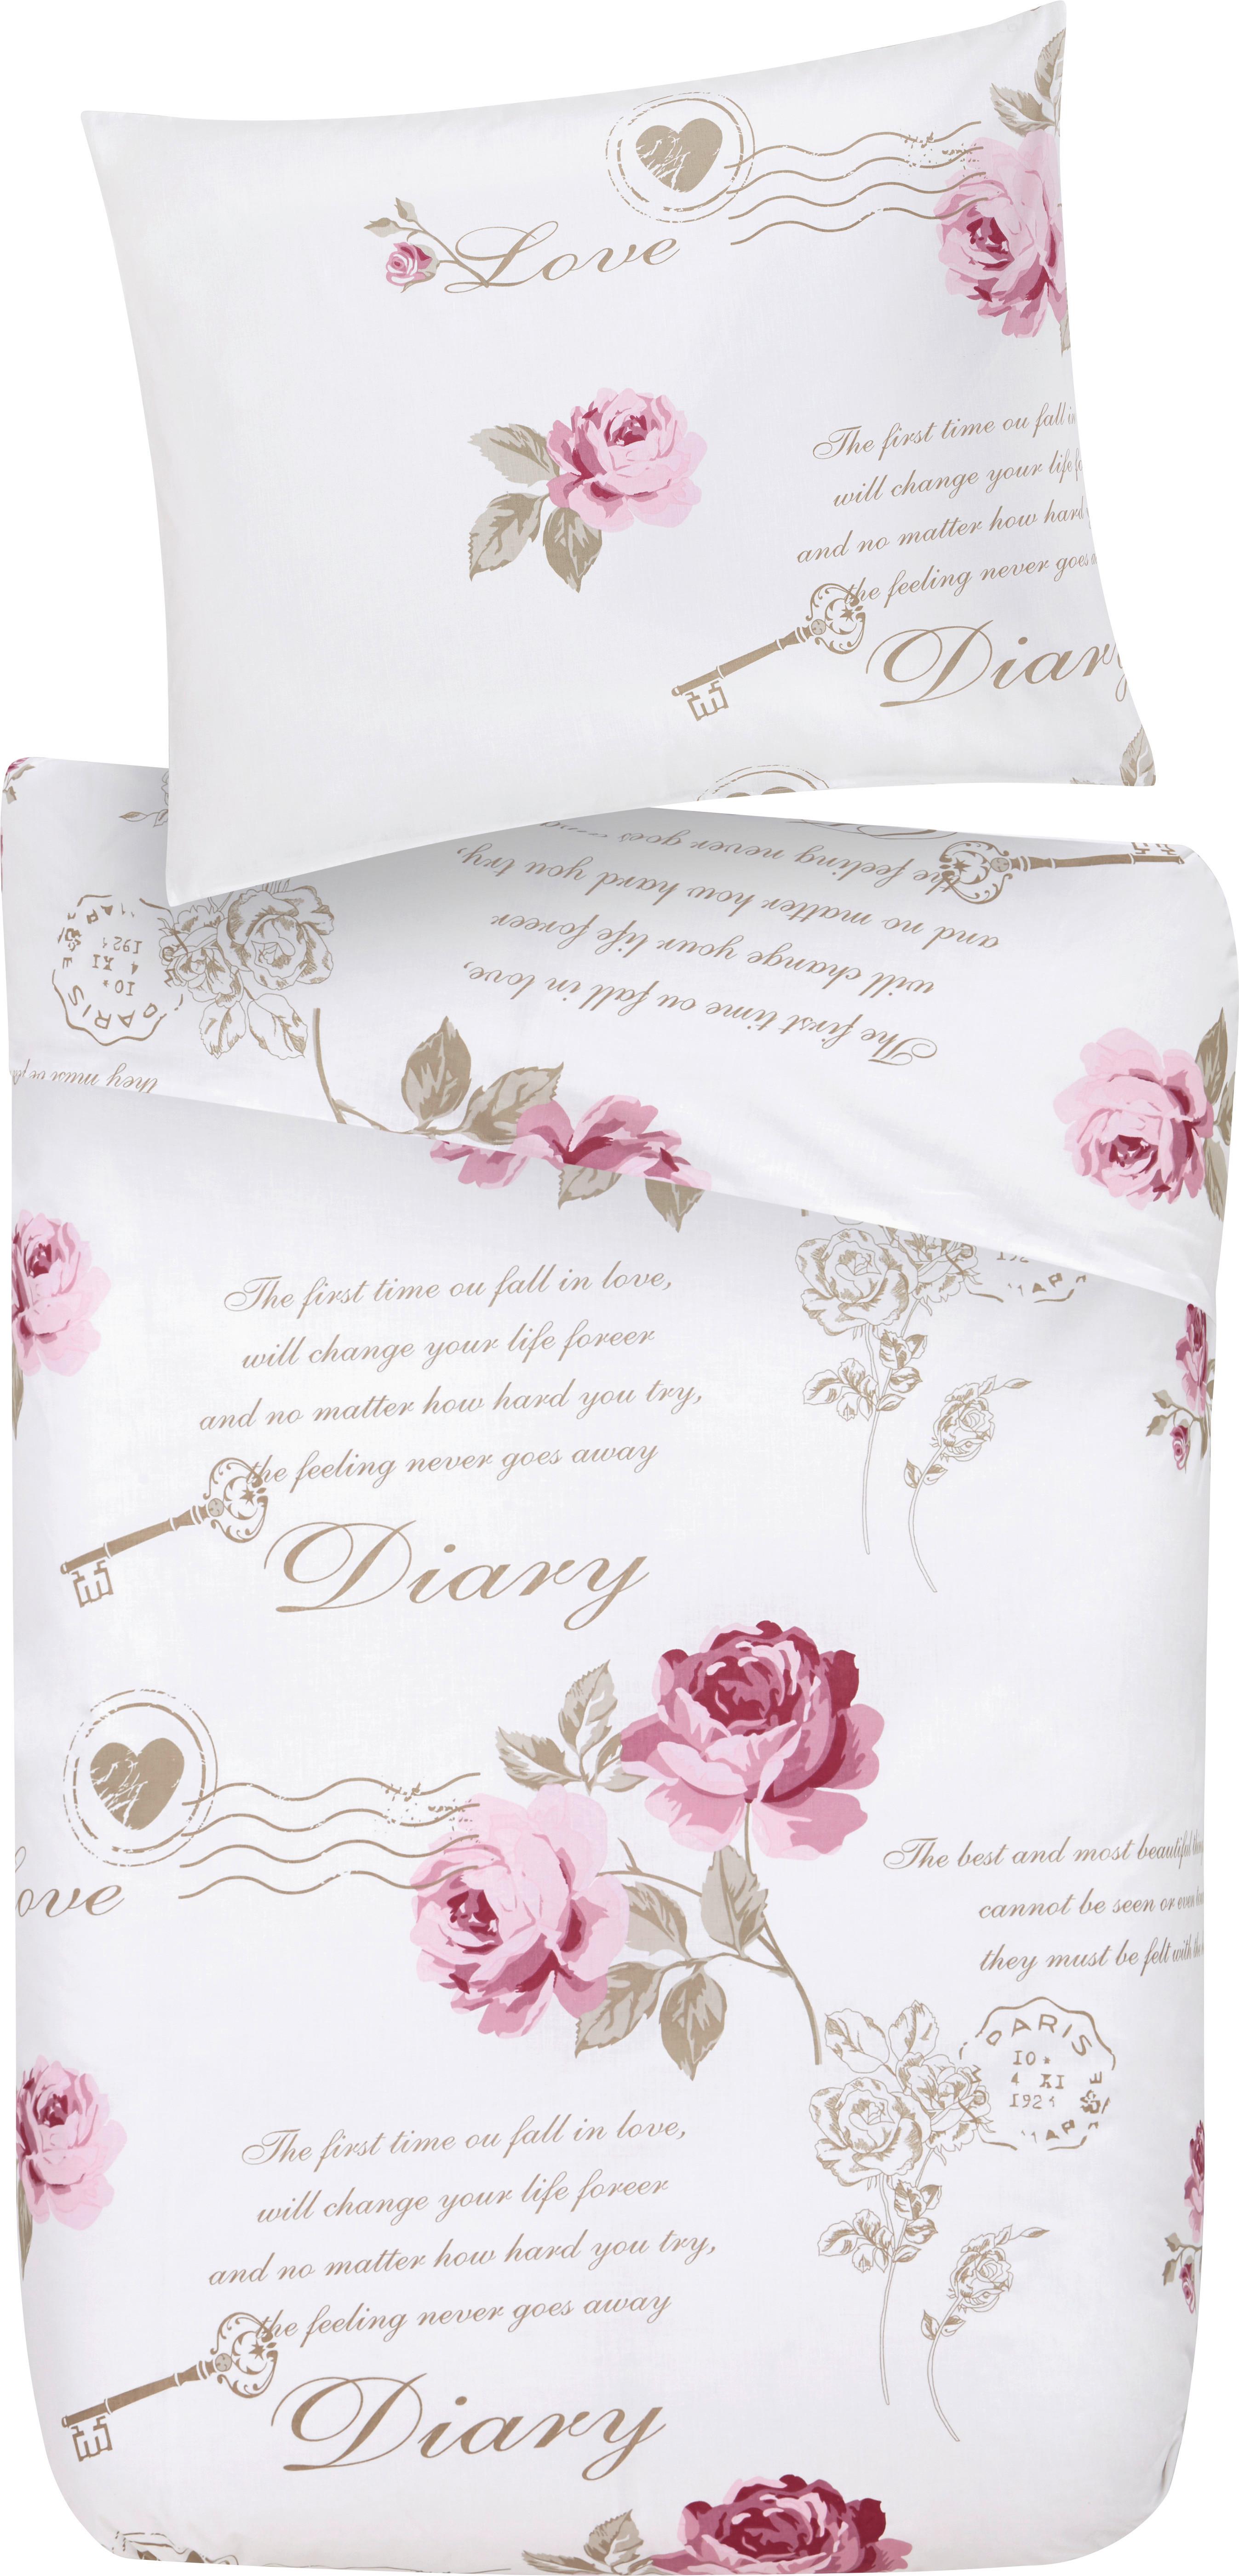 Povlečení Diary Rose, 140/200cm - bílá, Romantický / Rustikální, textil (140/200cm) - Modern Living